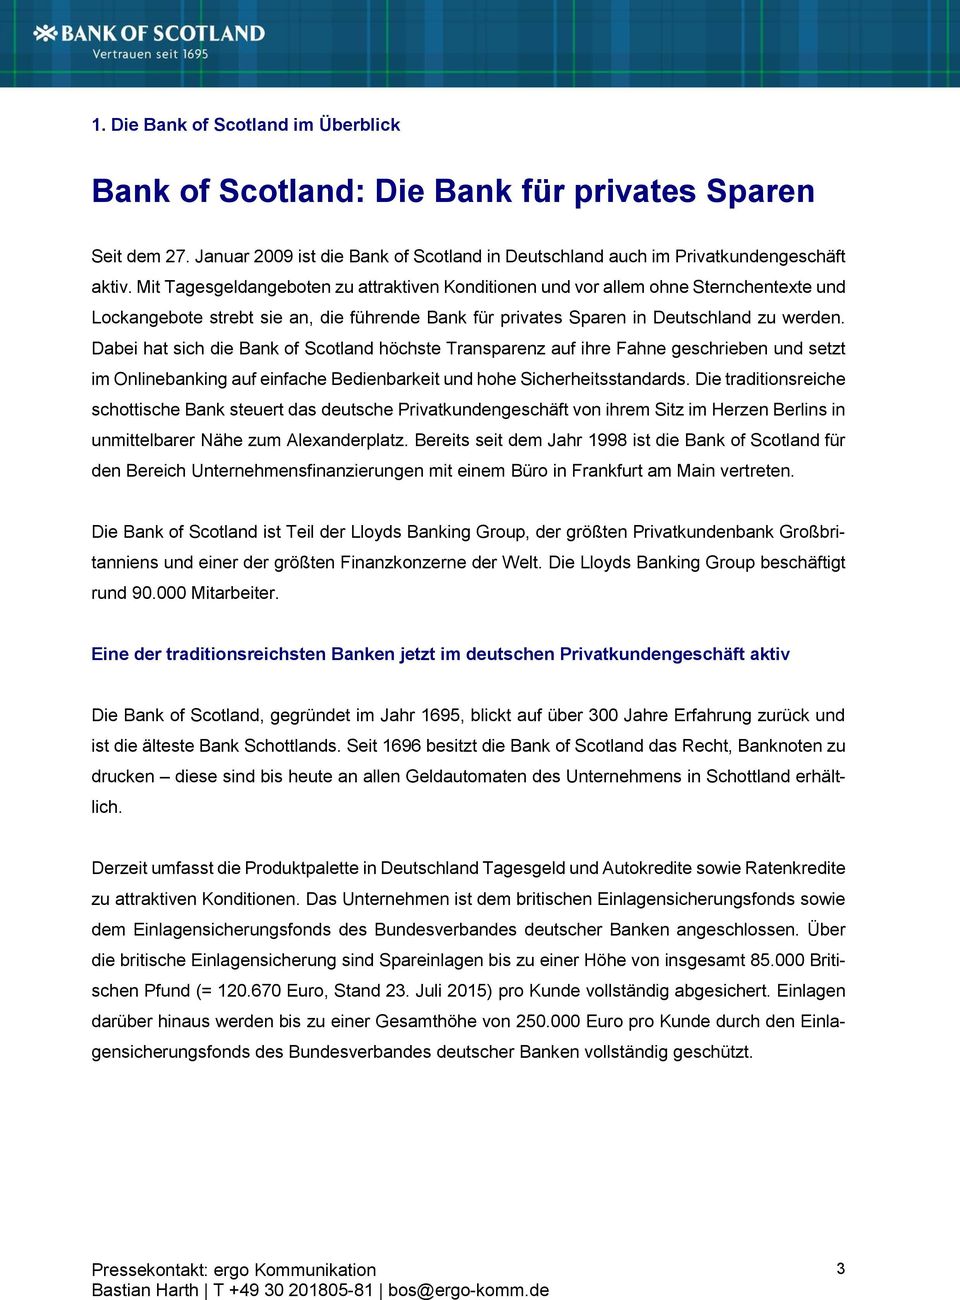 Dabei hat sich die Bank of Scotland höchste Transparenz auf ihre Fahne geschrieben und setzt im Onlinebanking auf einfache Bedienbarkeit und hohe Sicherheitsstandards.